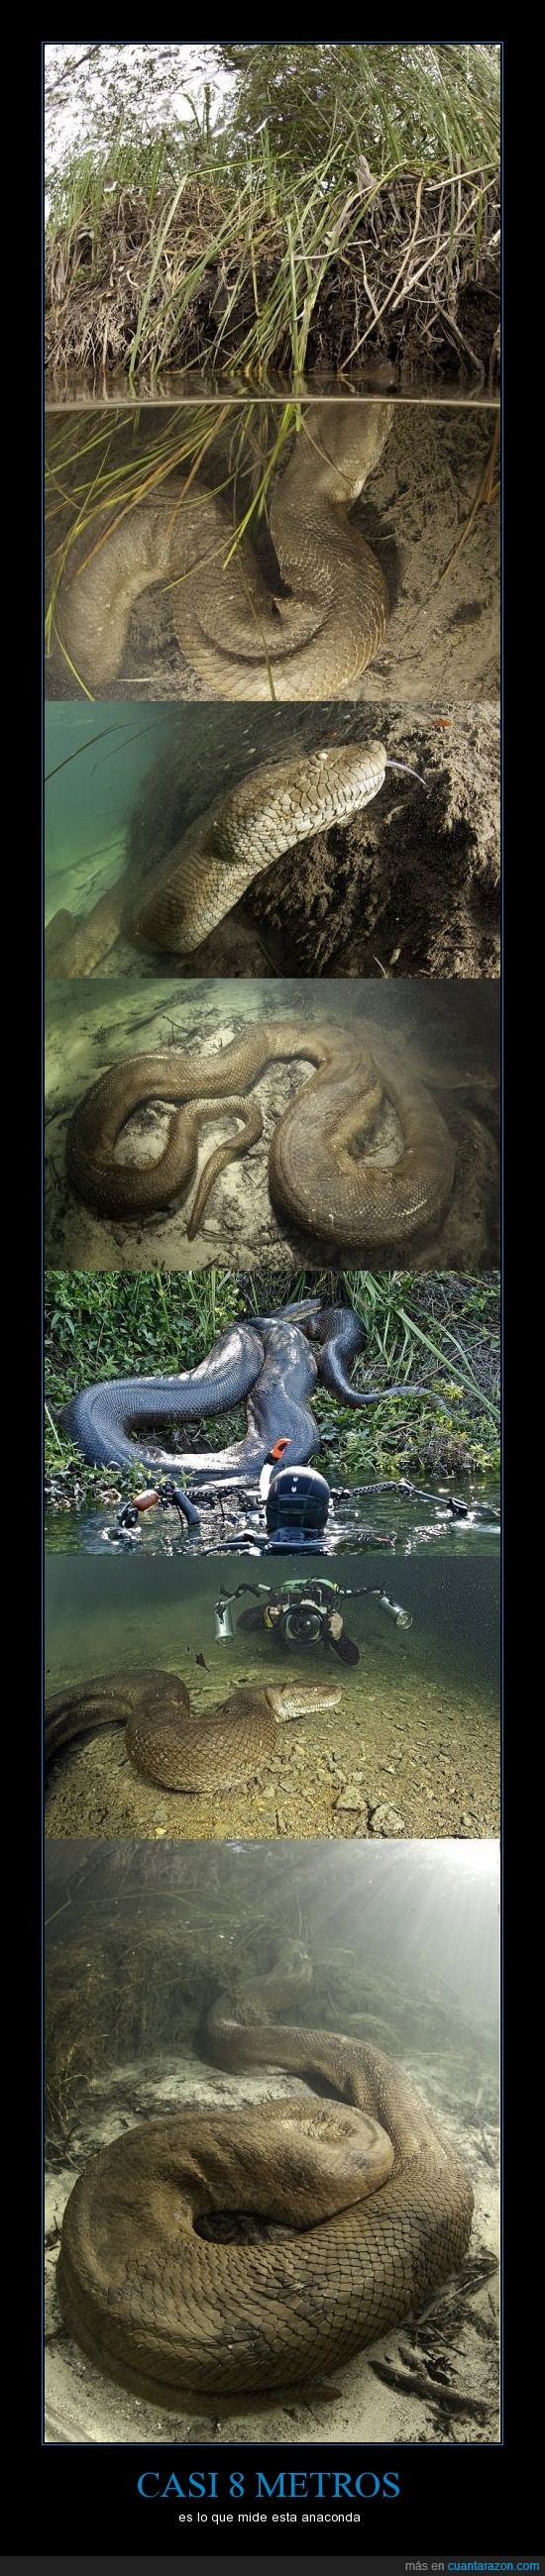 serpiente,grande,anaconda,animales